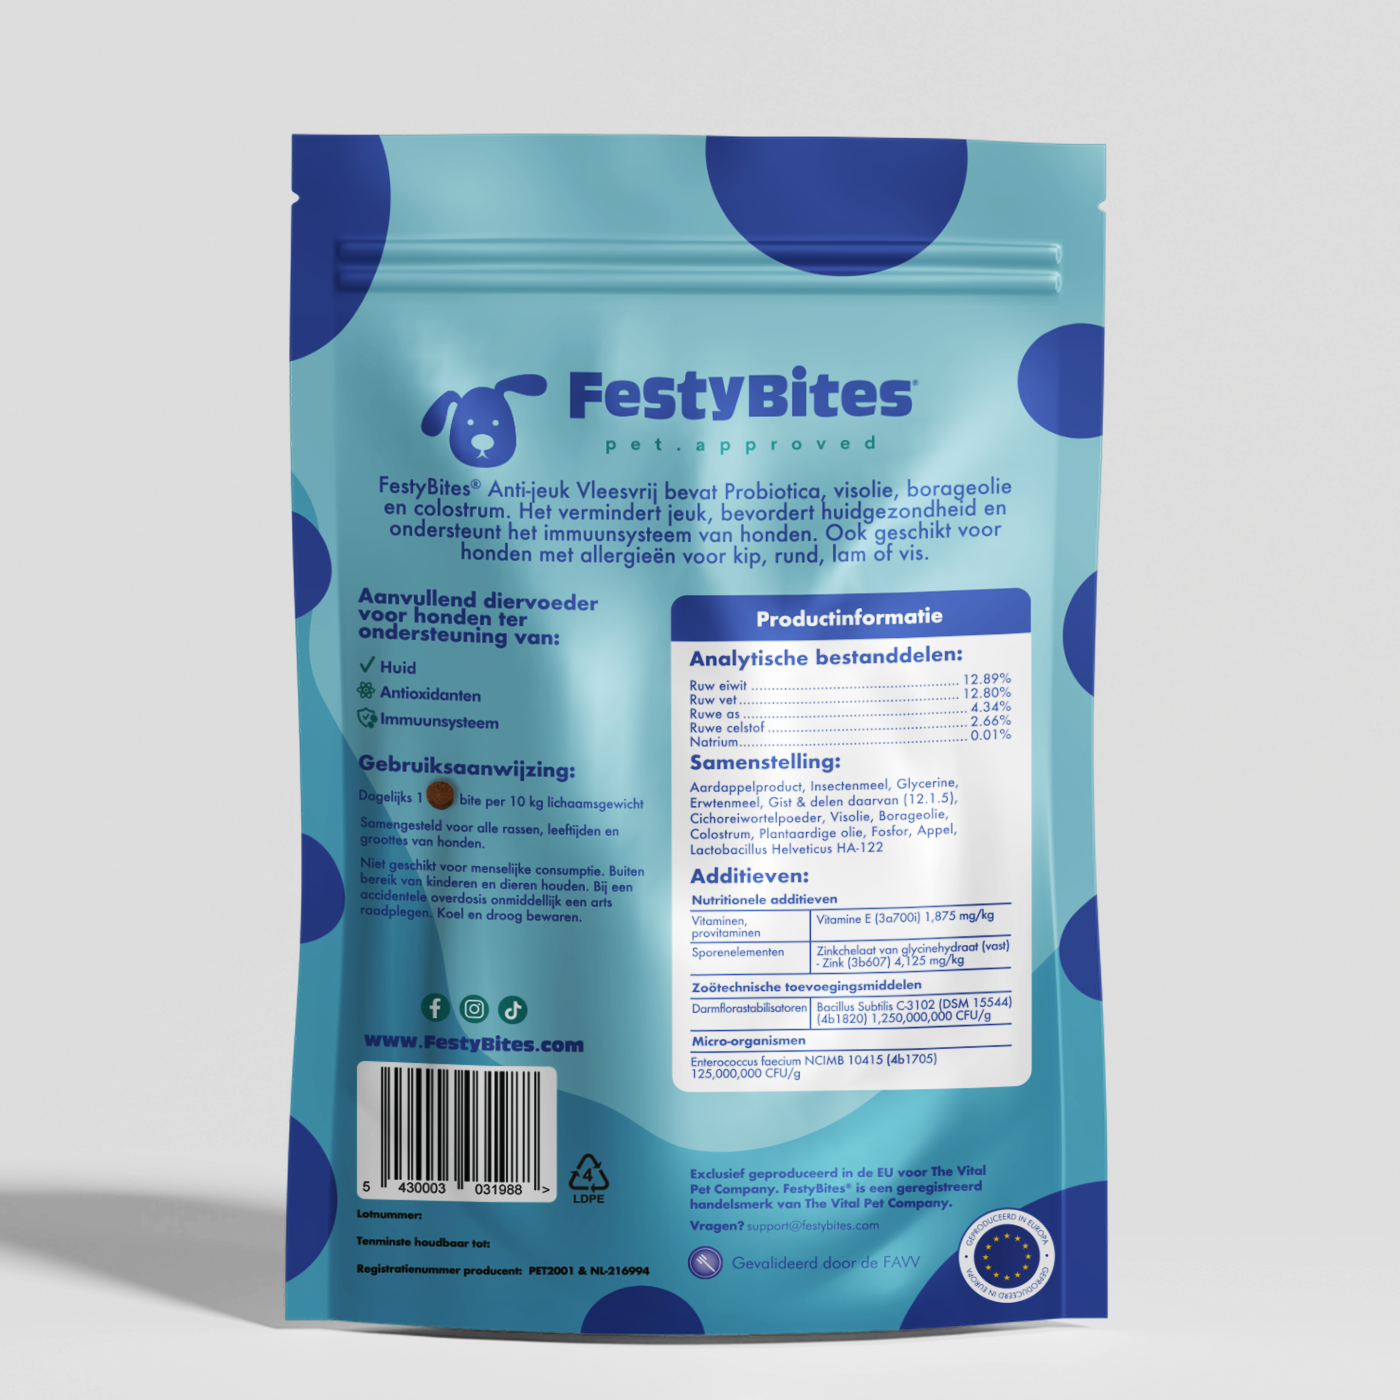 FestyBites anti-jeuk formule vermindert: krabneiging door pre- en probiotica, haarverlies met omega-3 vetzuren, schilferige huid met teunisbloemolie, allergieën met colostrum, wondjes met zinkchelaat en colostrum voor huidherstel.